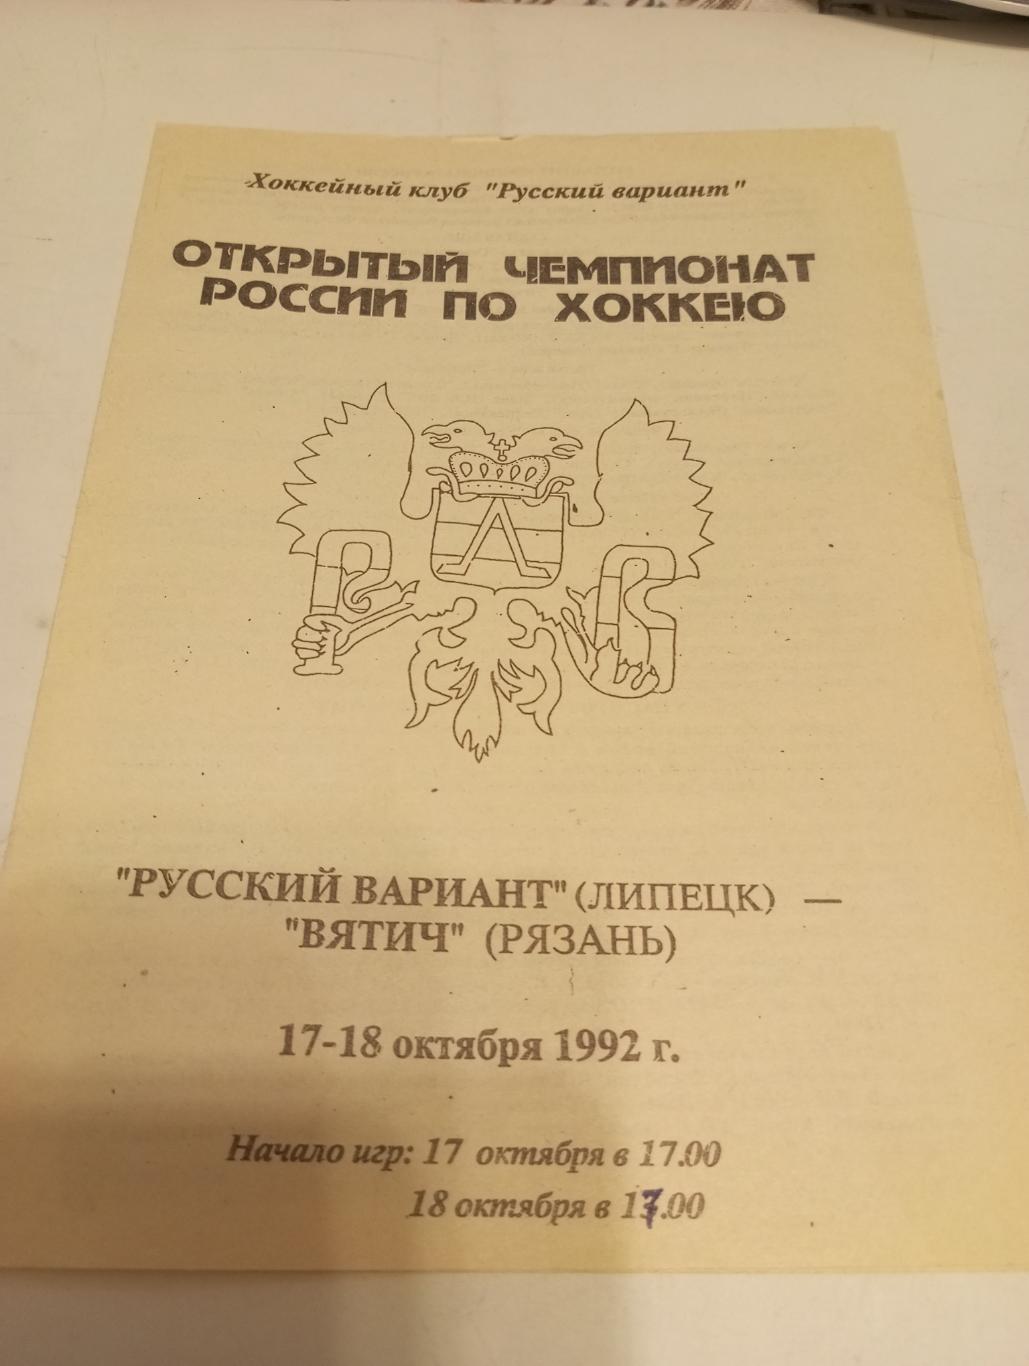 Русский Вариант (Липецк) - Вятич (Рязань).17/18.10.1992.